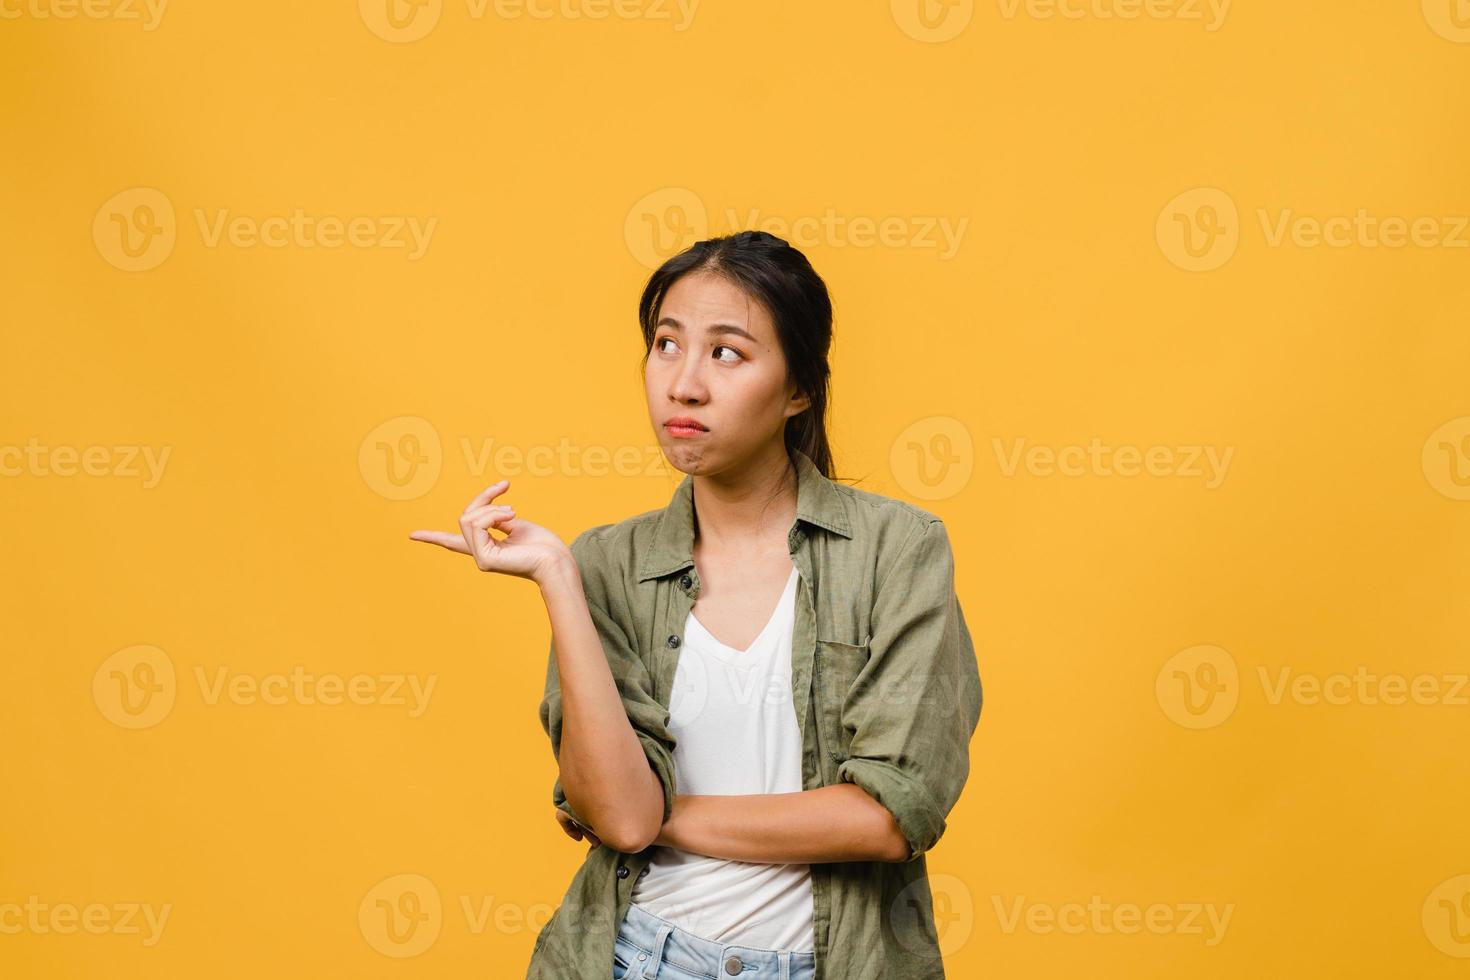 ung asiatisk dam visar något fantastiskt på tomt utrymme med negativt uttryck, upphetsad skrik, gråter känslomässigt arg i vardagskläder isolerad över gul bakgrund. ansiktsuttryck koncept. foto